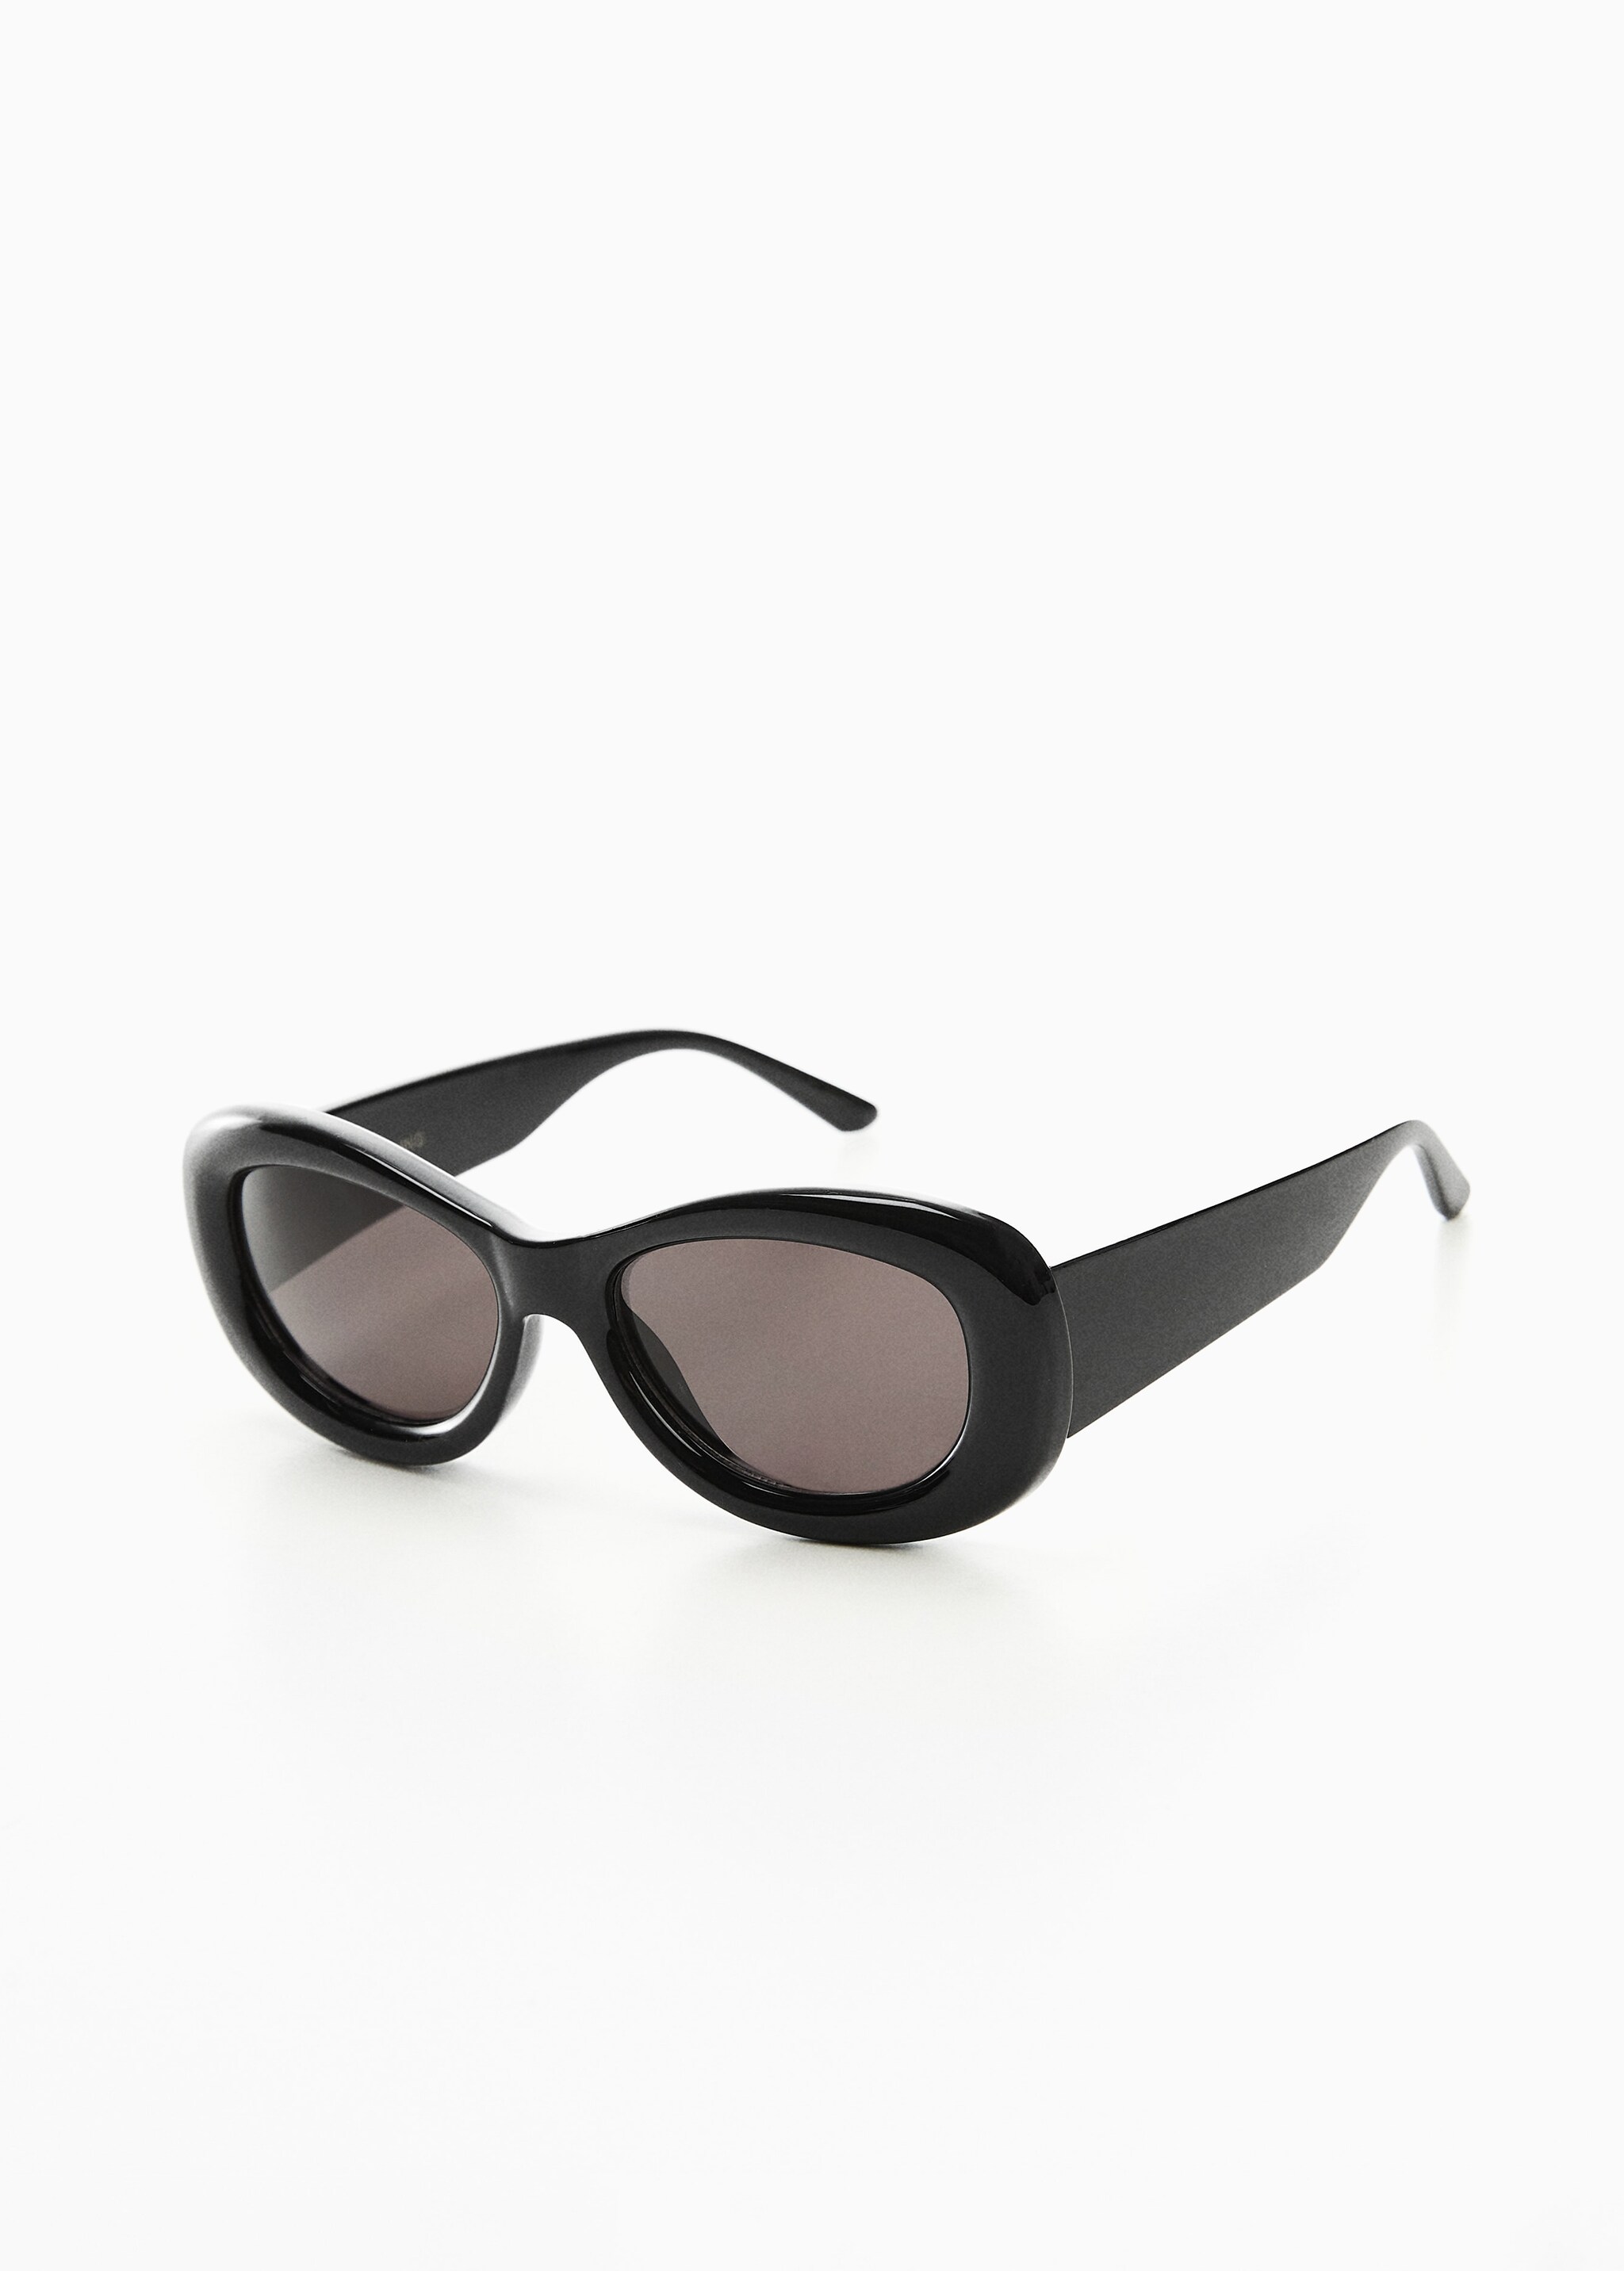 Acetate frame sunglasses - Medium plane